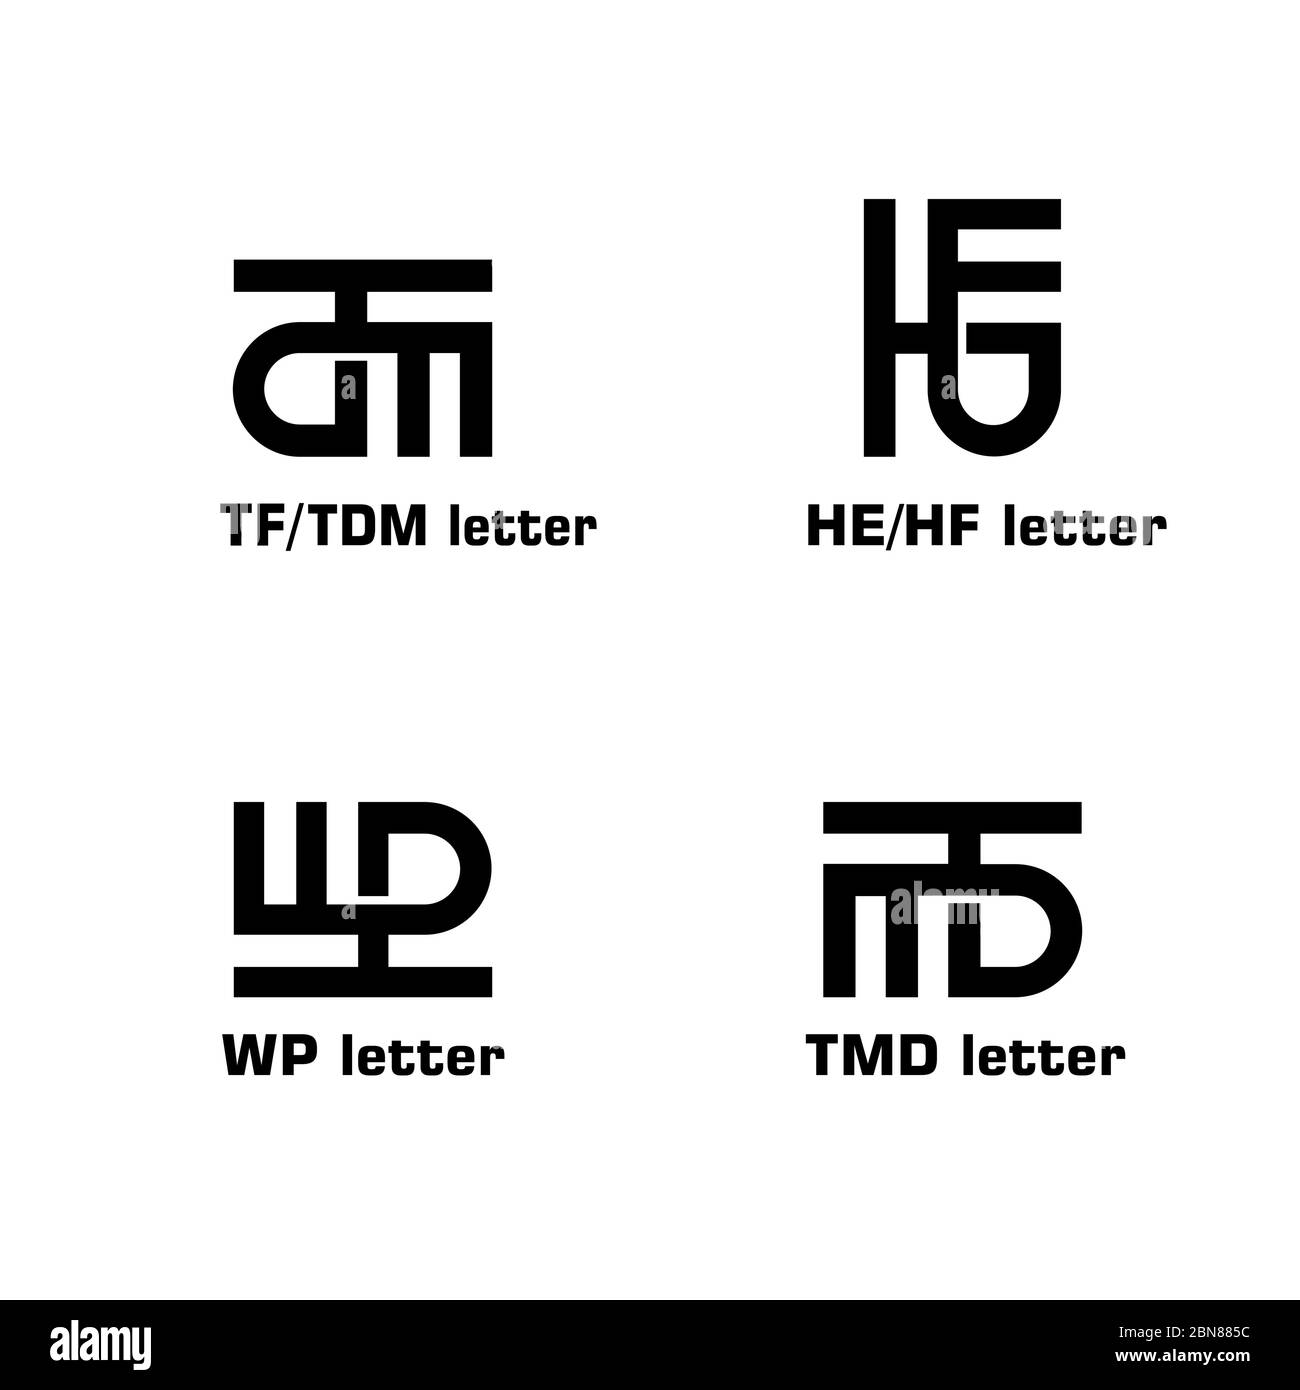 Lettera iniziale TF, TDM. HE, HF, WP, TMD, MTB, modello grafico del logo, concetto creativo, semplice e minimal di design del logo, isolato su sfondo bianco. Illustrazione Vettoriale